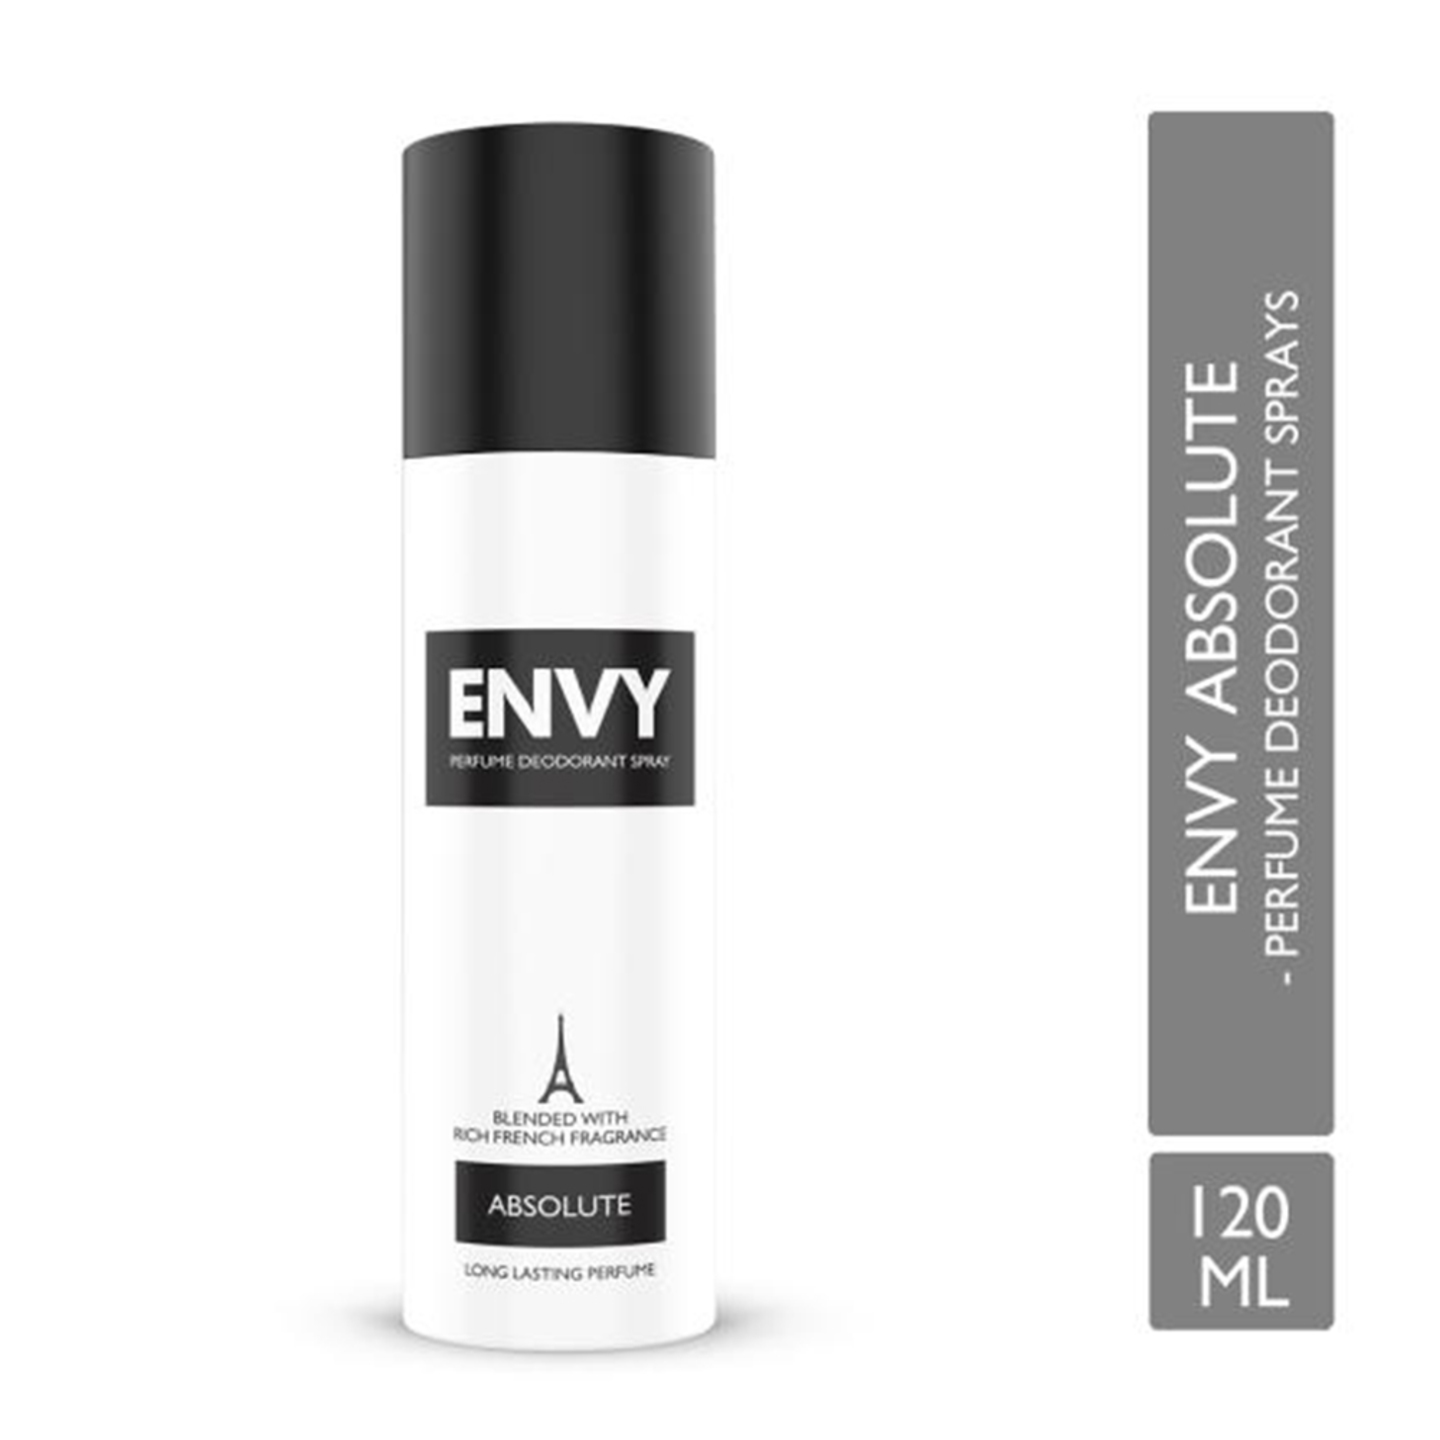 Envy Absolute Deodorant For Men - 120ml  InnerMan